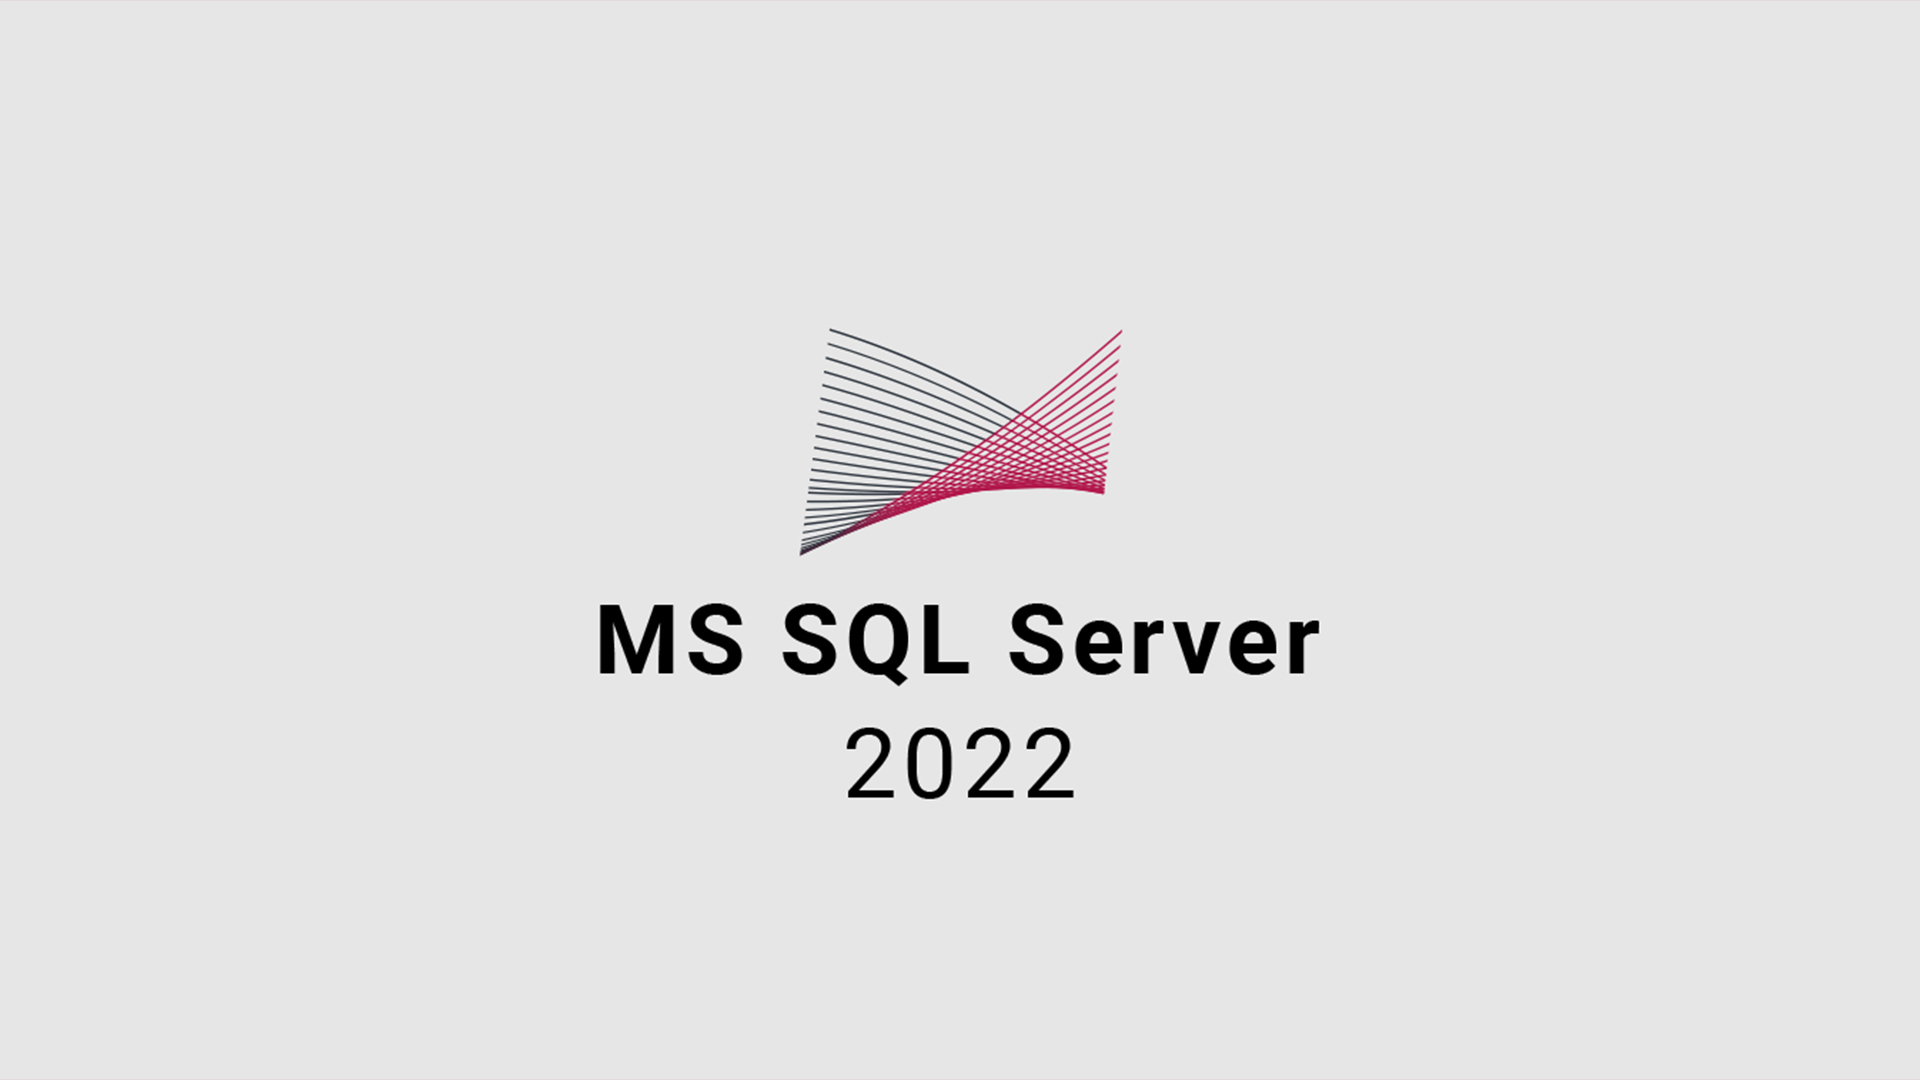 MS SQL Server 2022 CD Key 111.87 USD